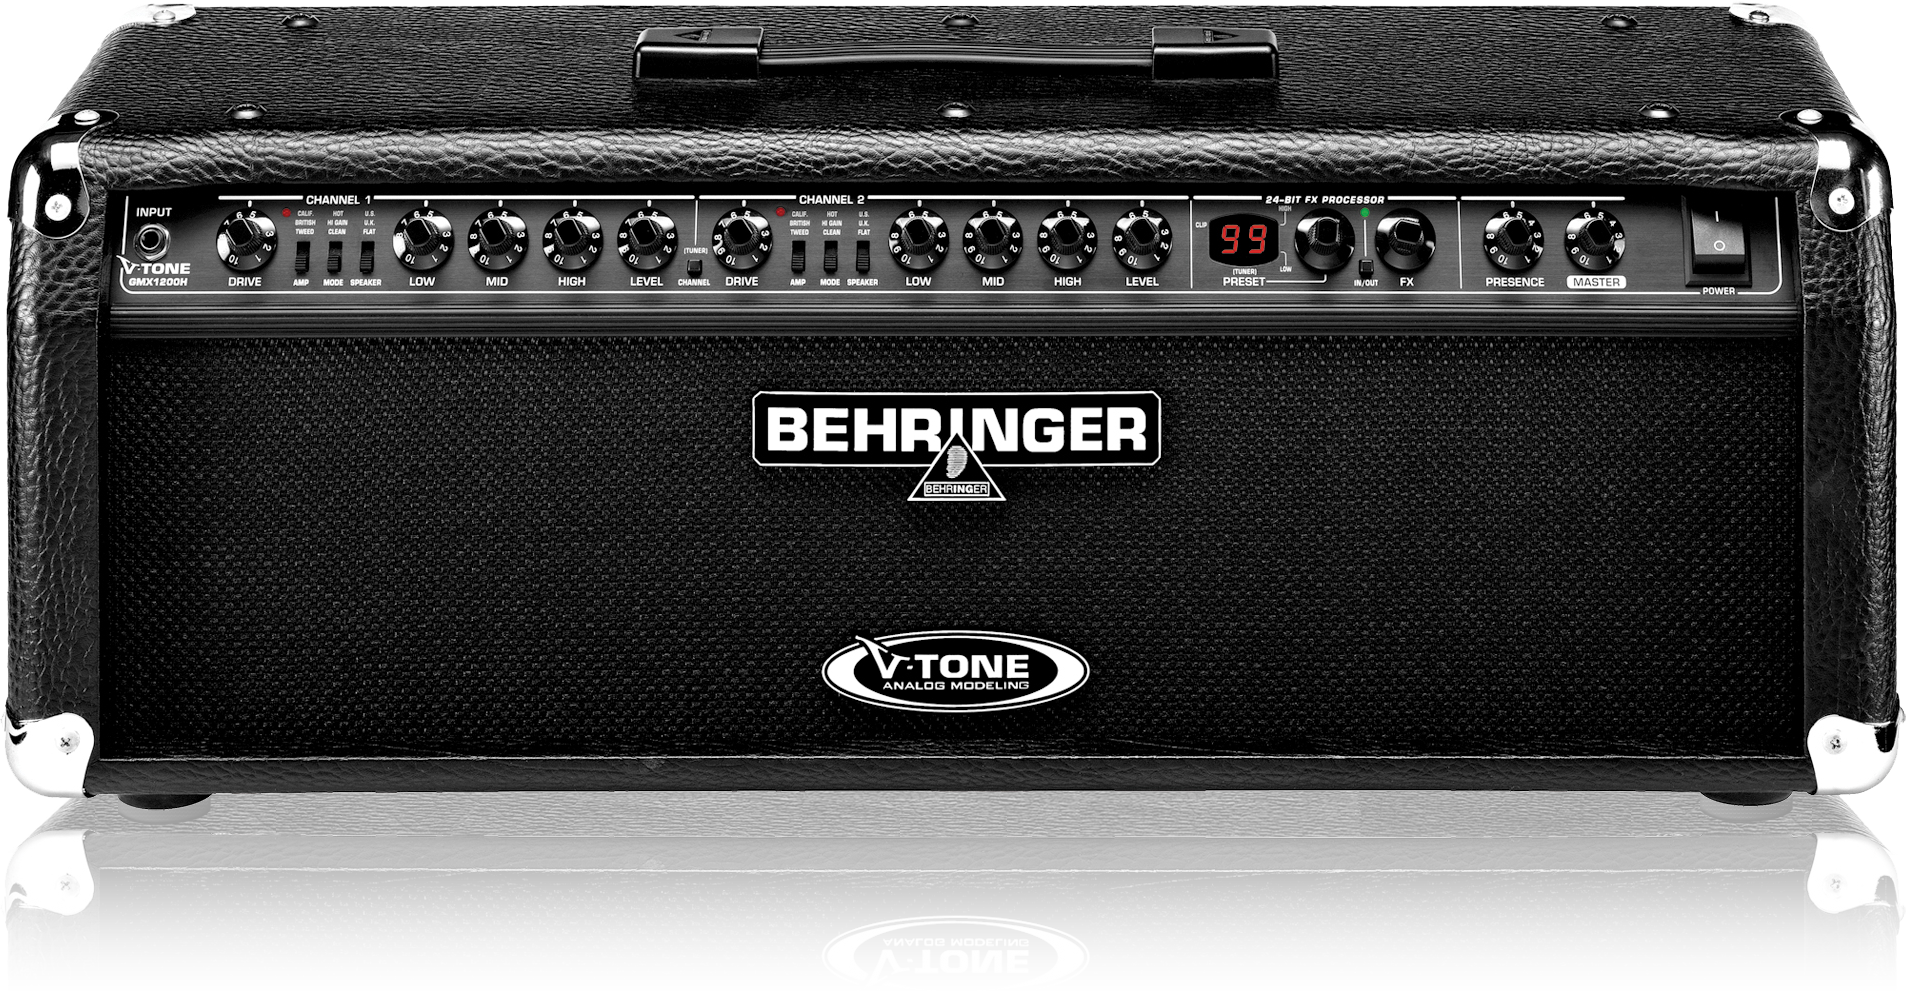 Behringer гитарный усилитель. Behringer v-Tone голова усилитель. Комбоусилитель Behringer kx500. Гитарный усилитель Behringer Vintager.